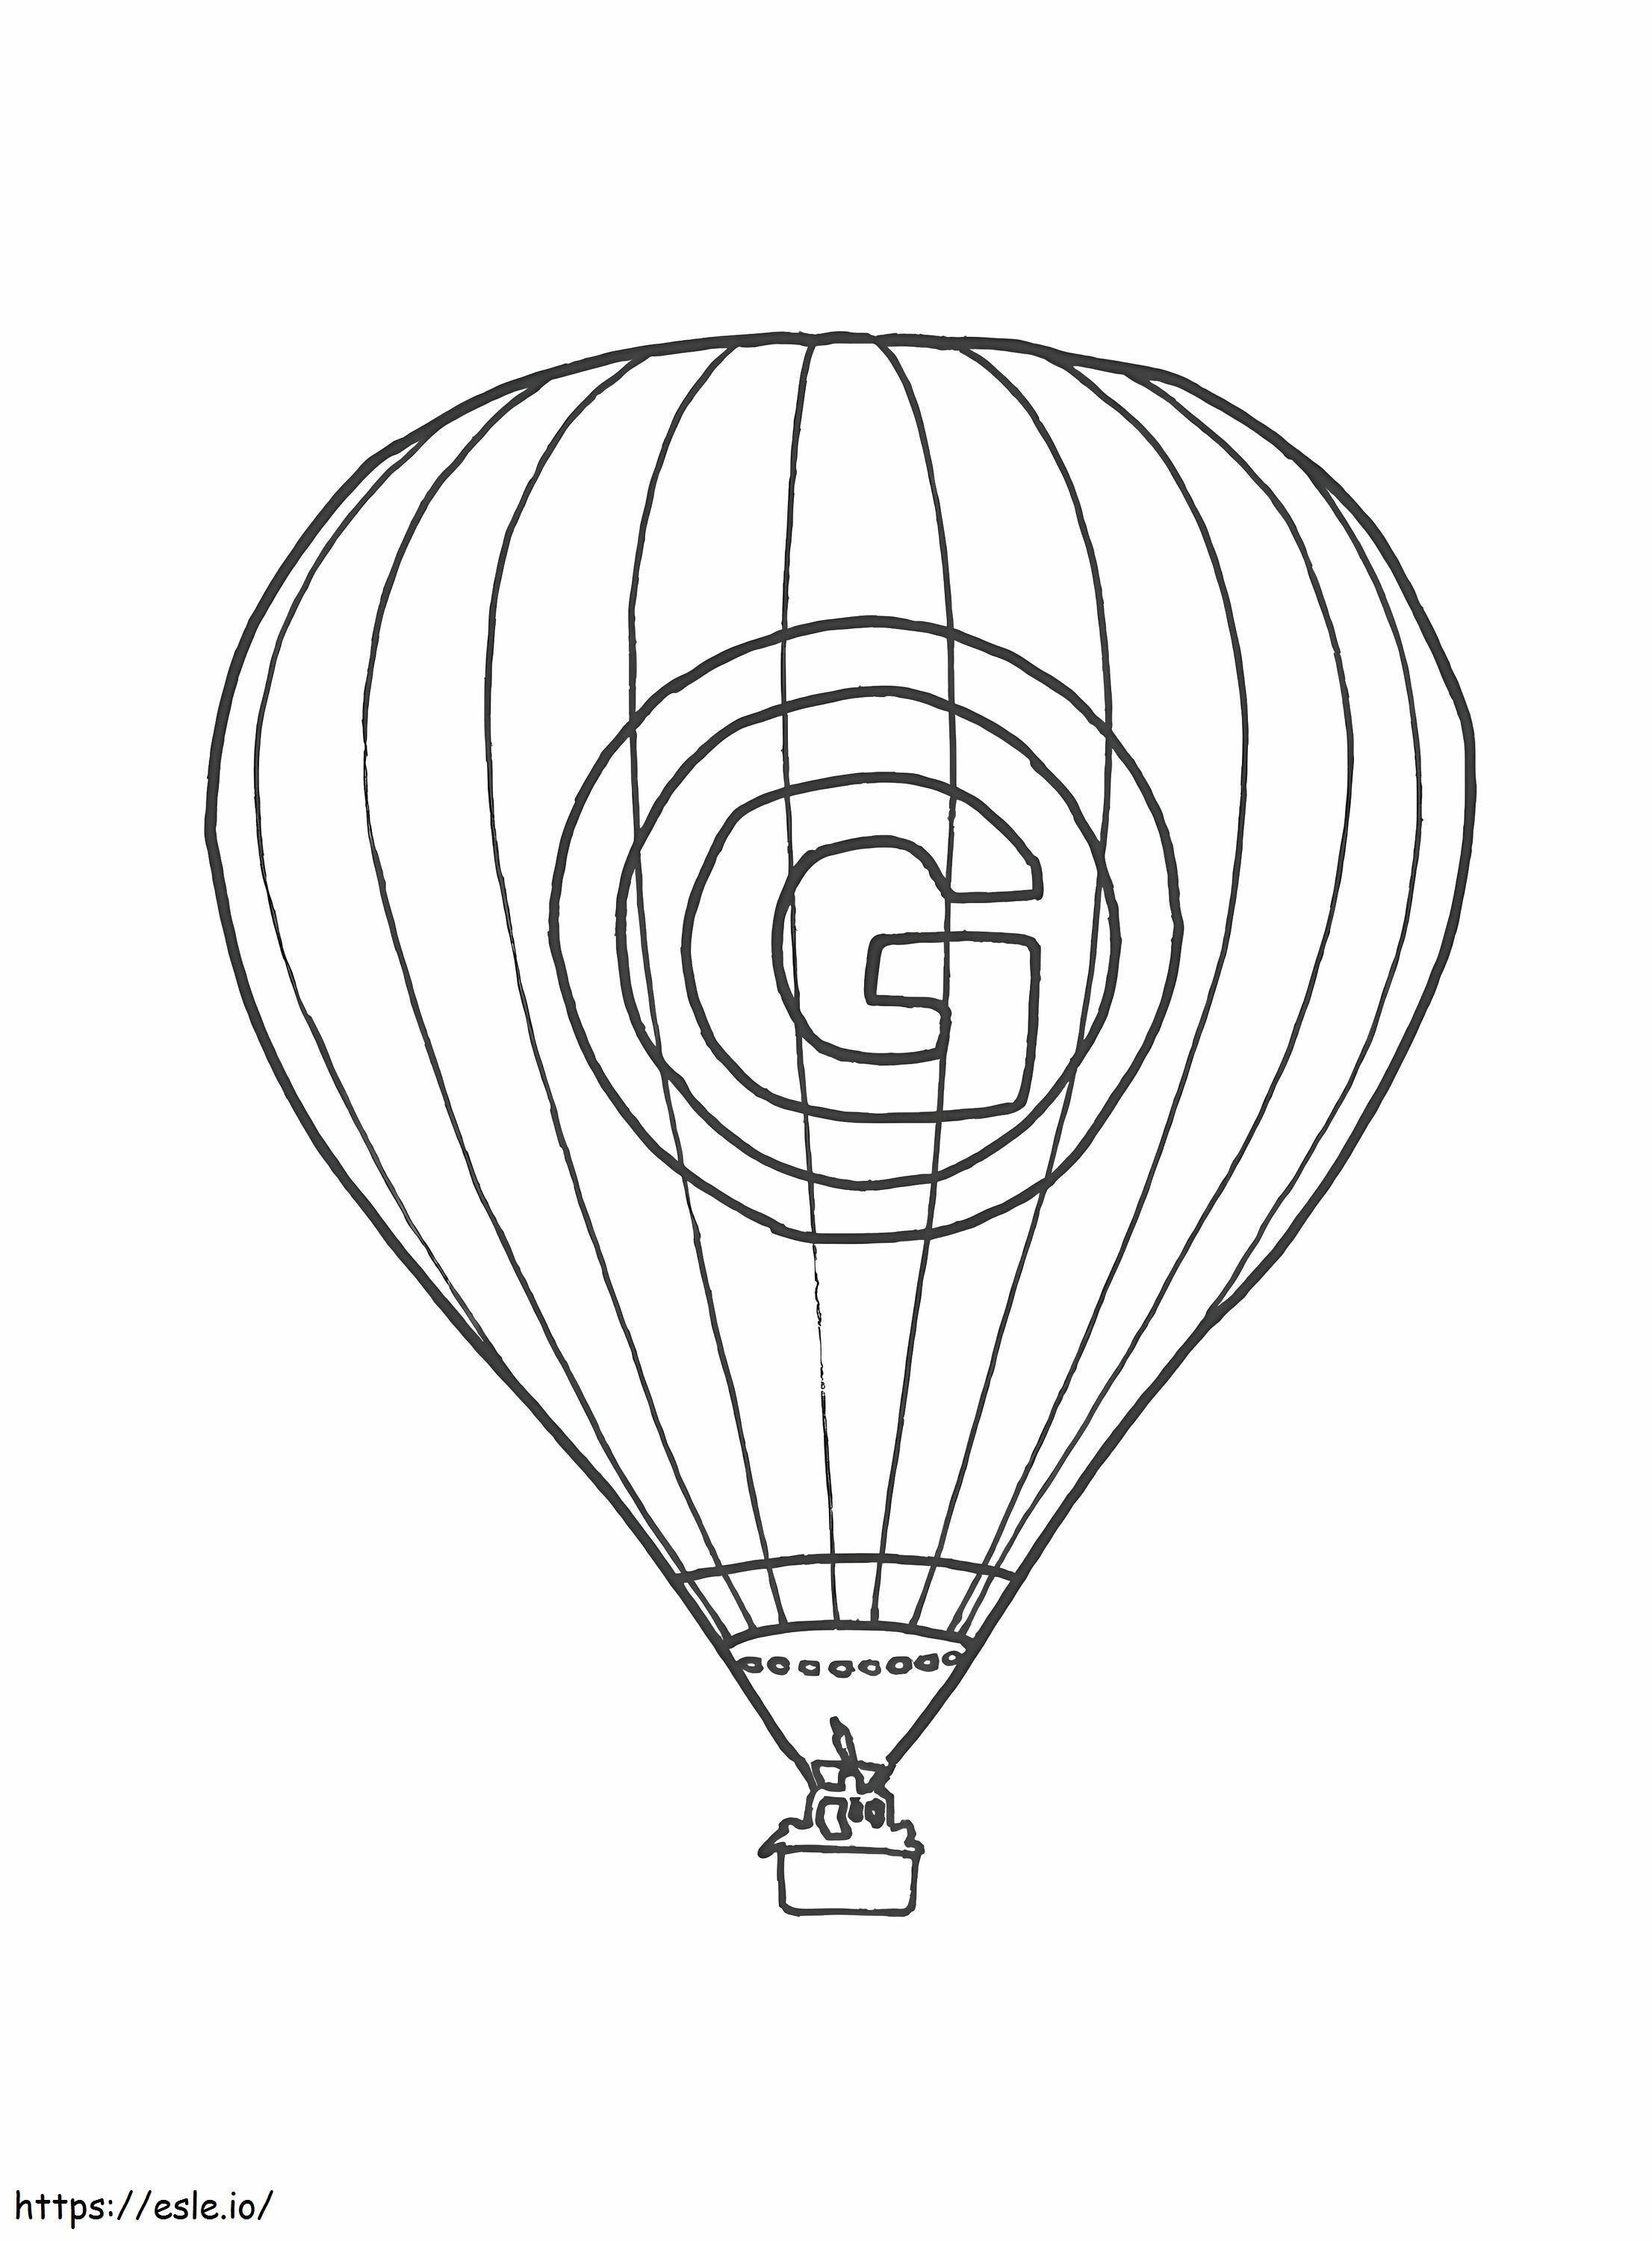 Balão de ar quente símbolo G para colorir